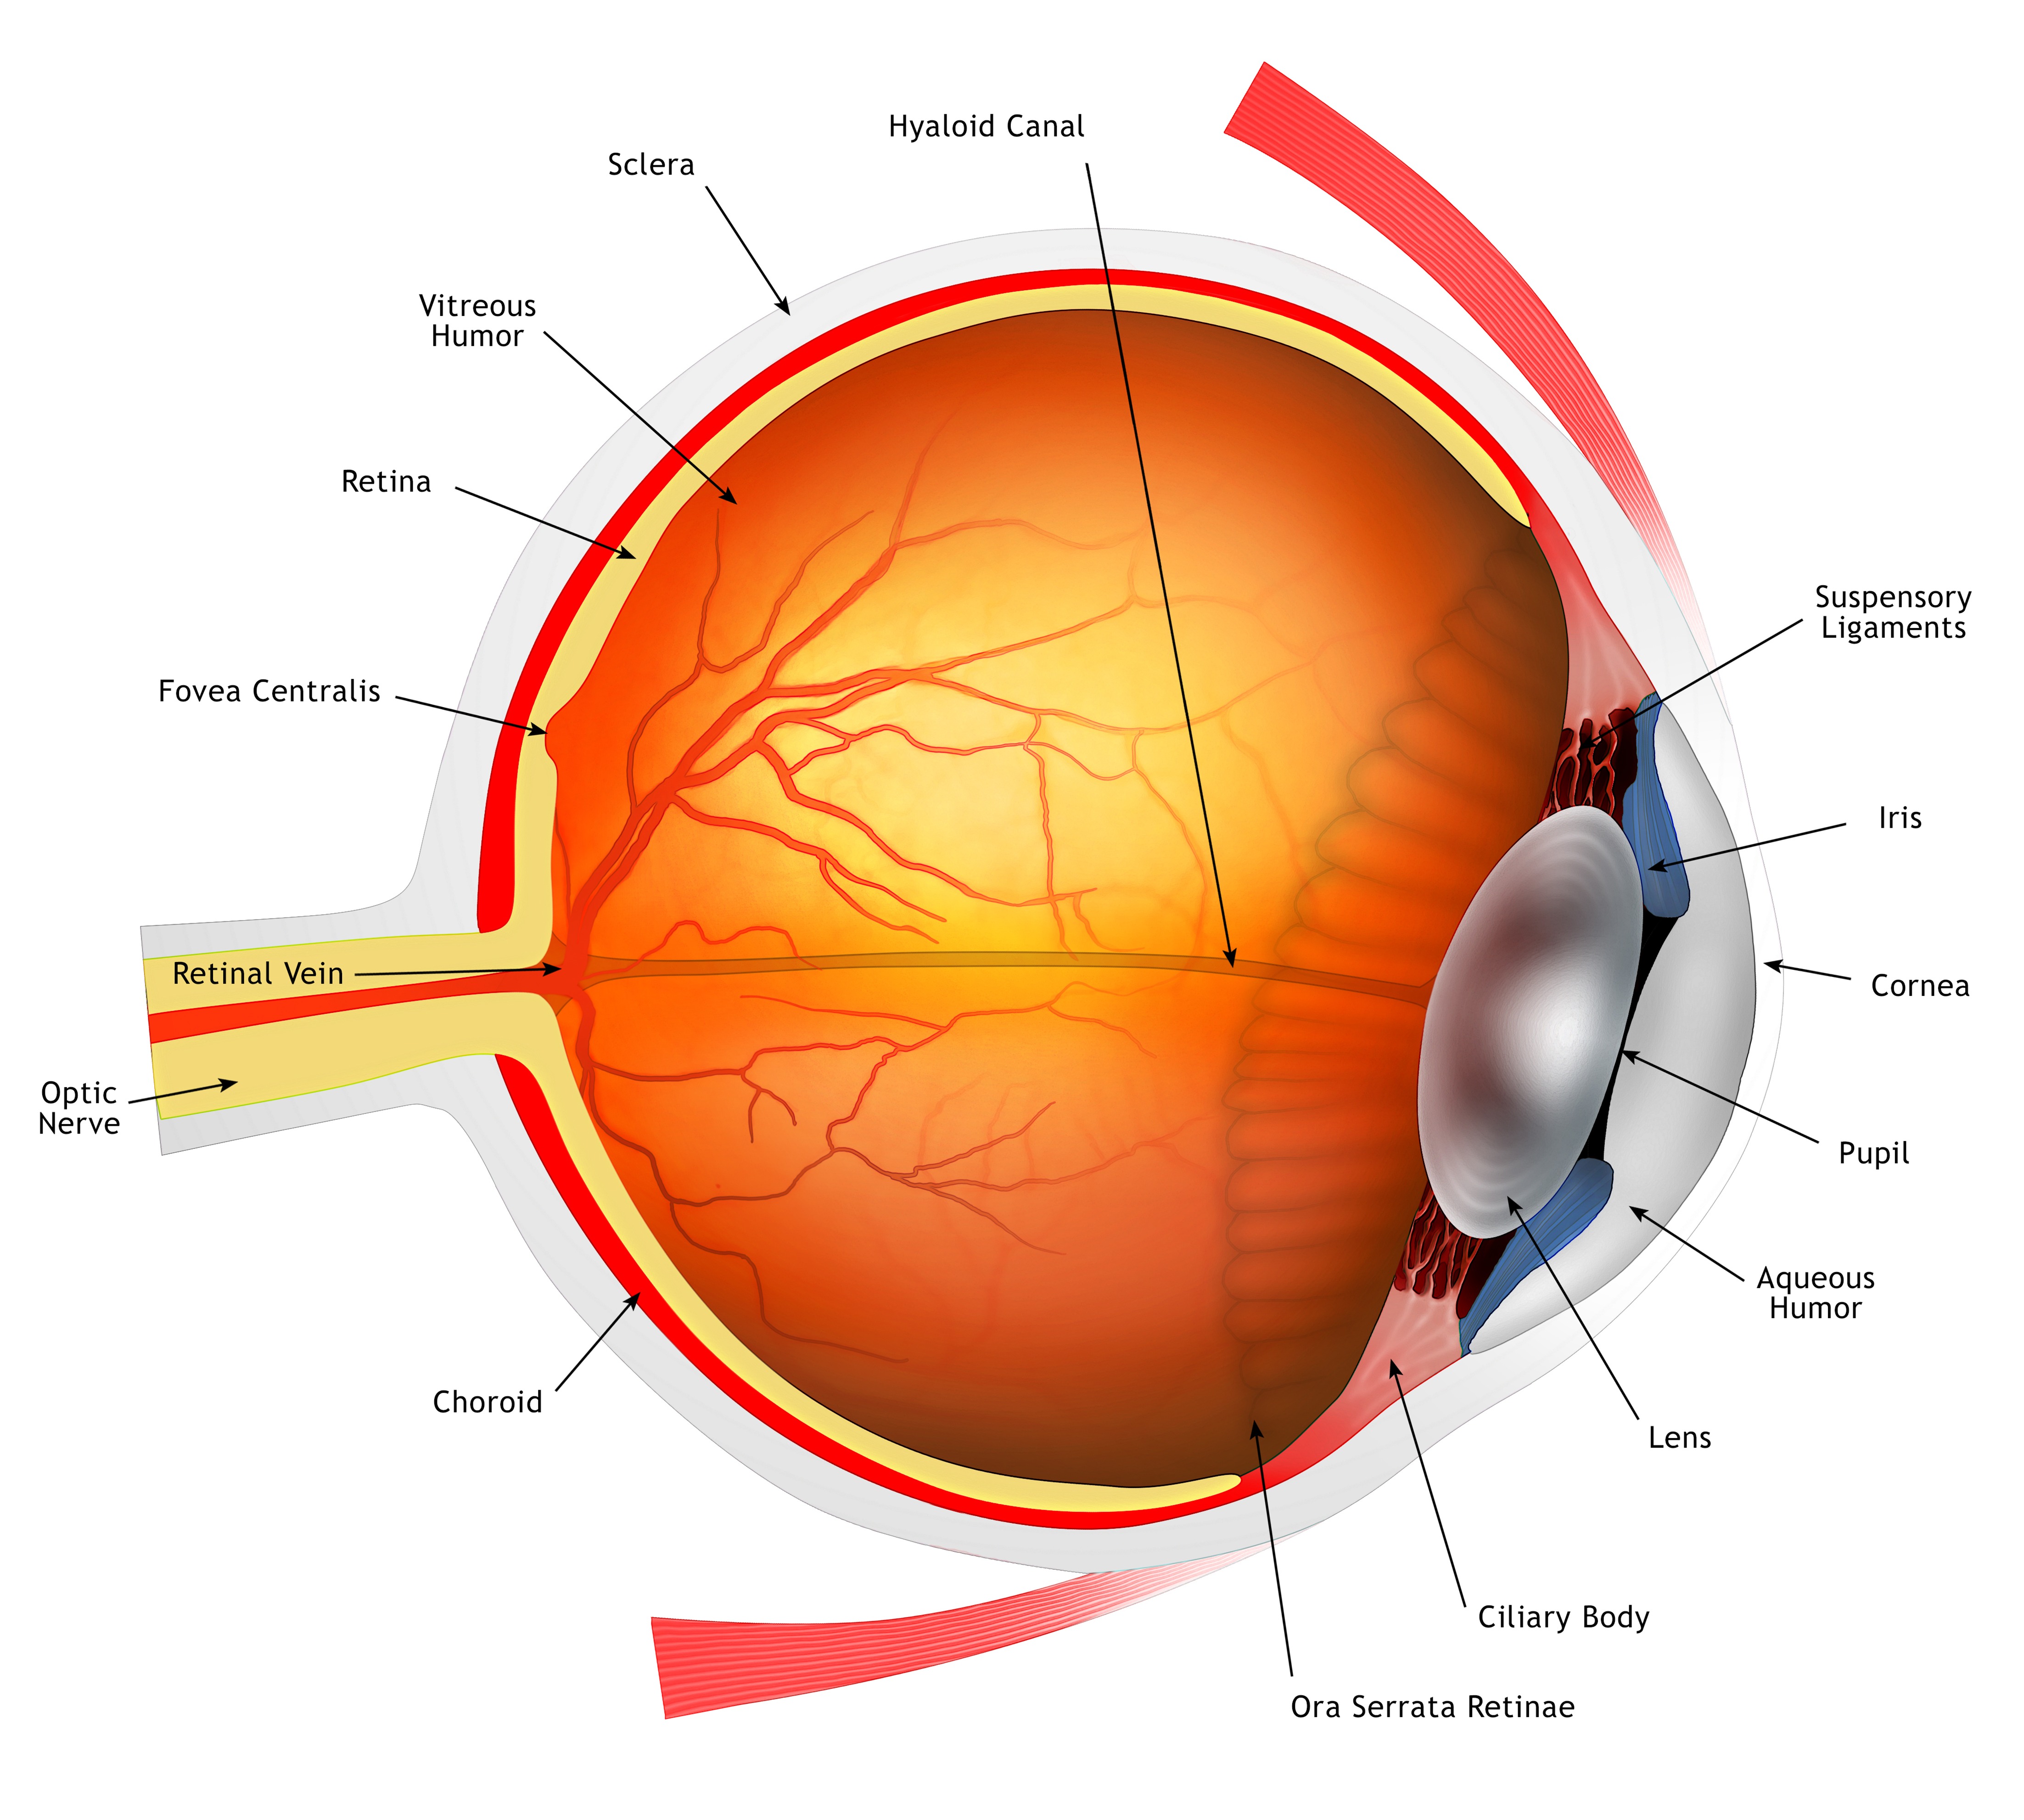 Magyar kutató vezetésével sikerült működő emberi retinát létrehozni laboratóriumi körülmények között